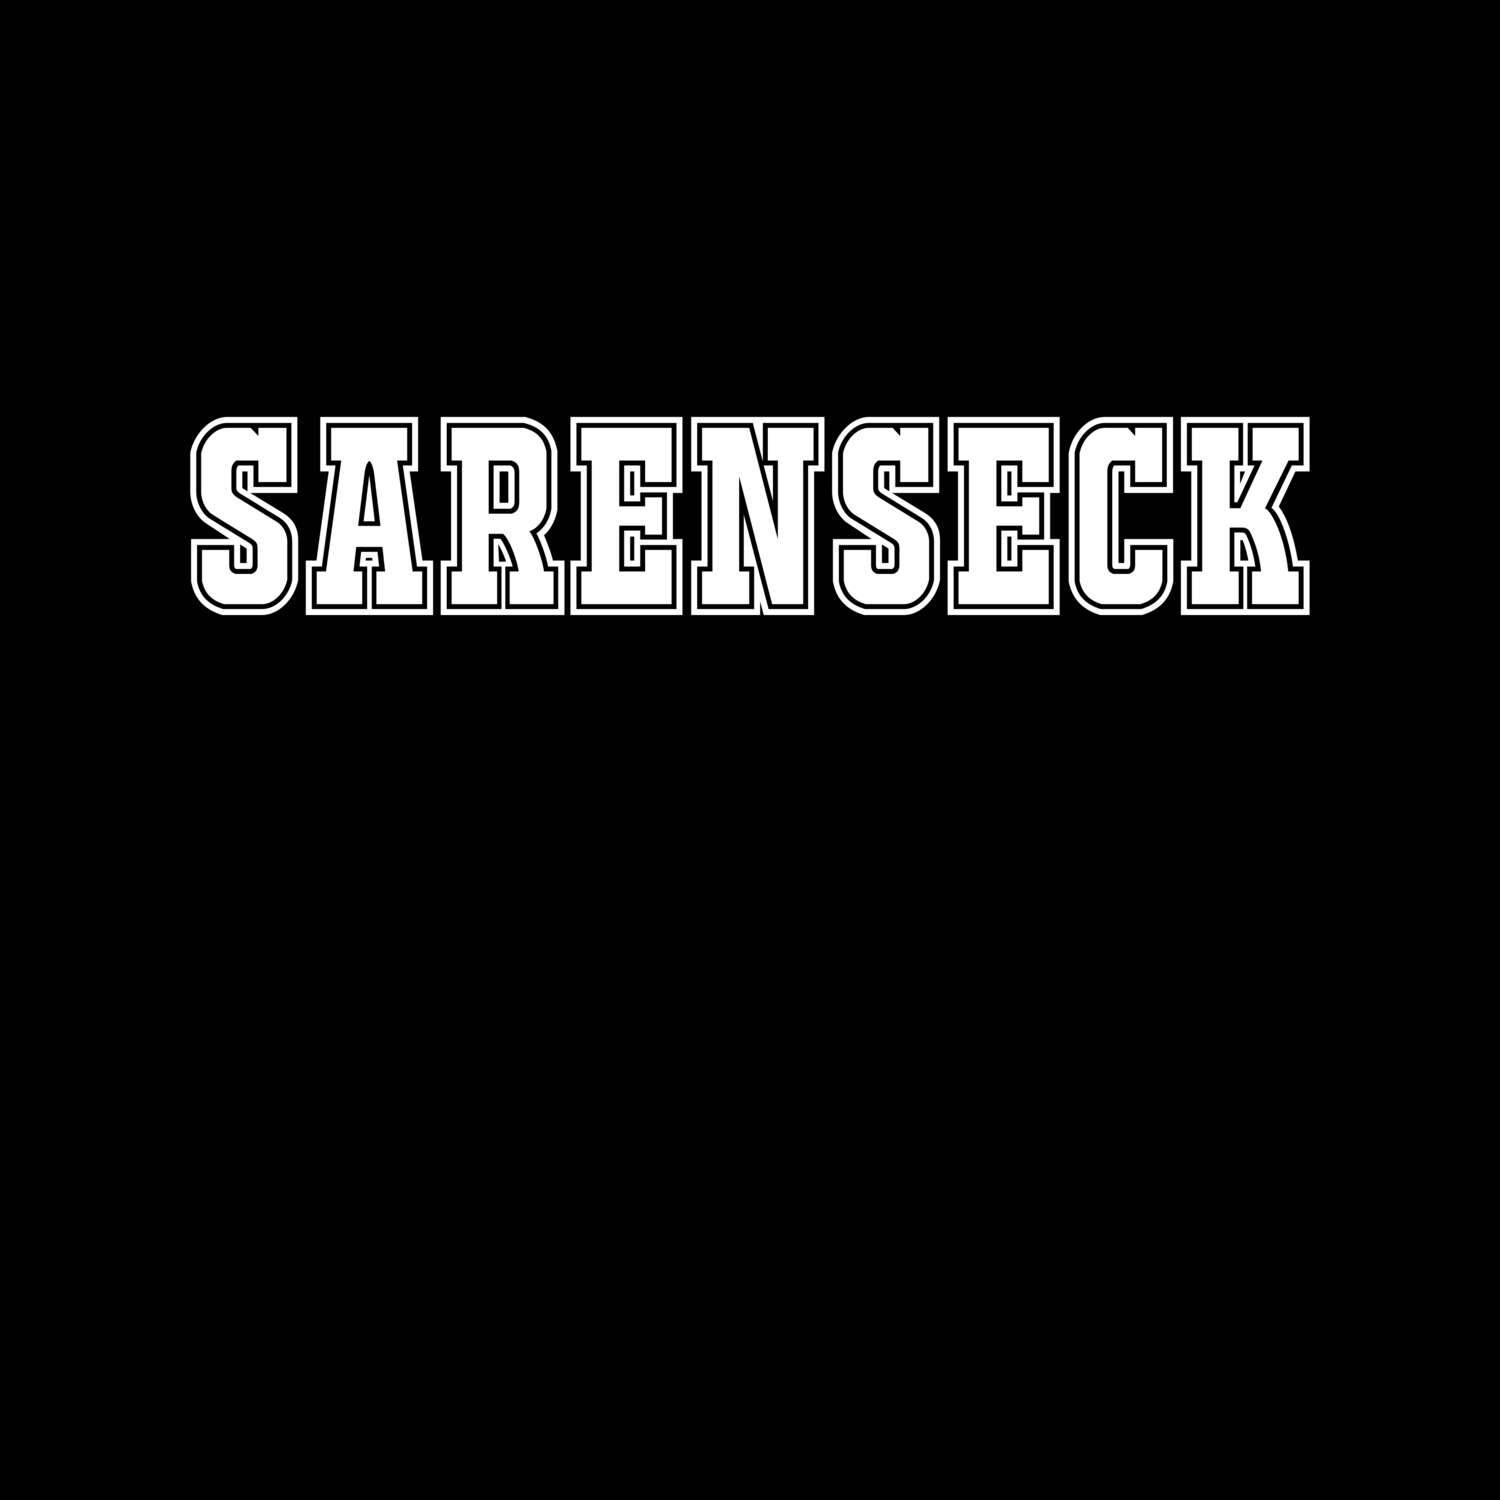 Sarenseck T-Shirt »Classic«